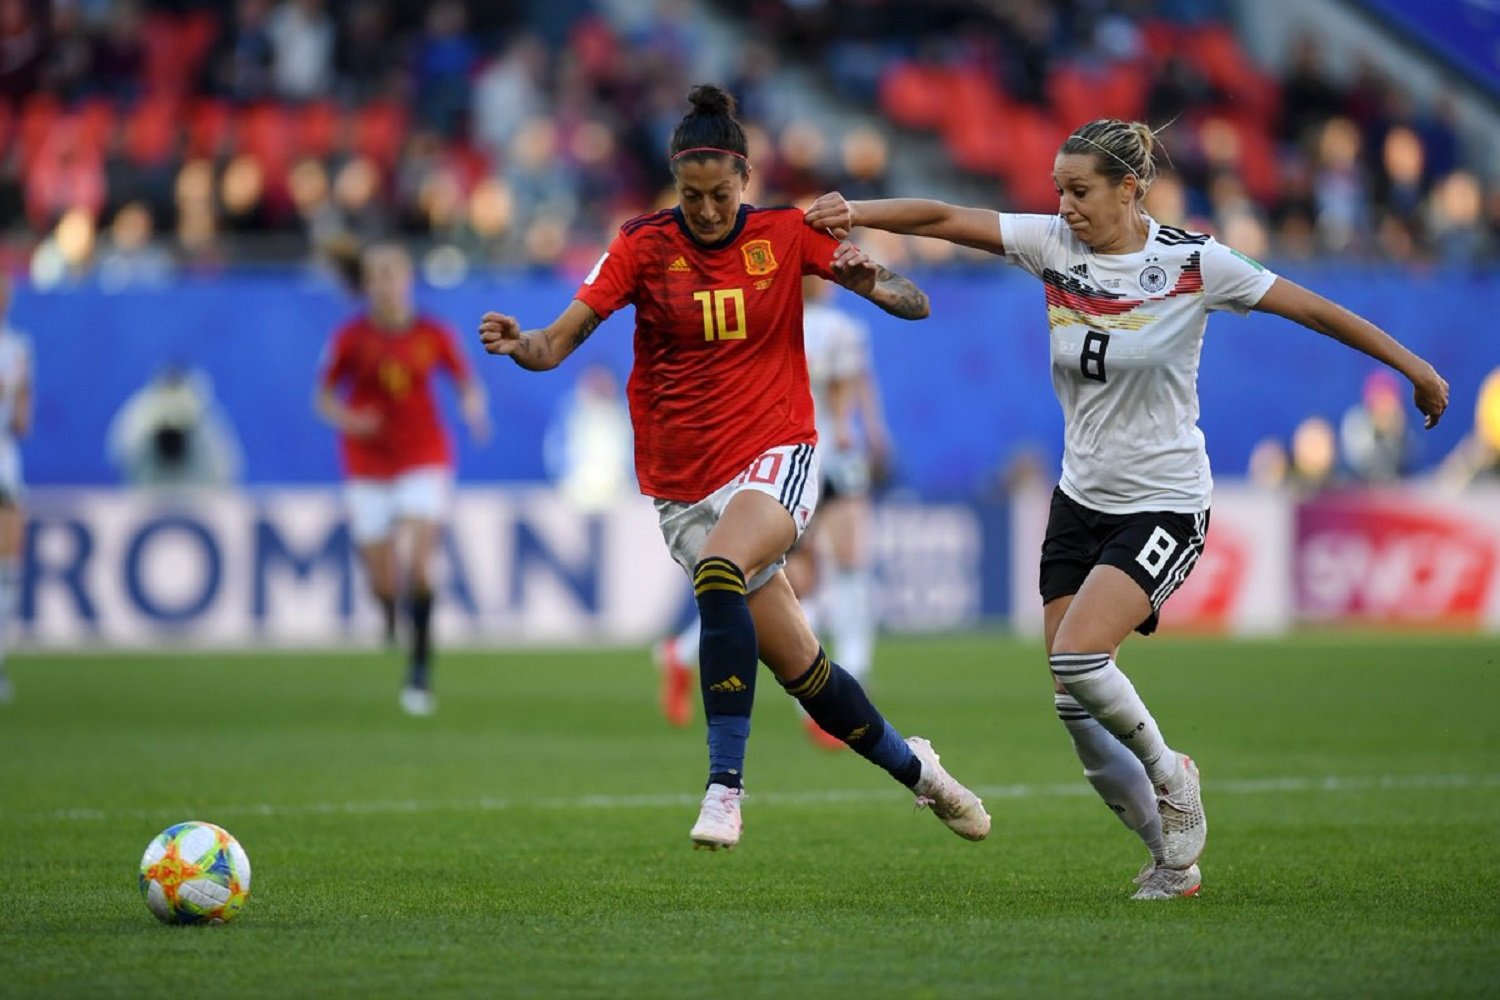 Alemania frena las aspiraciones de España en el Mundial (1-0)